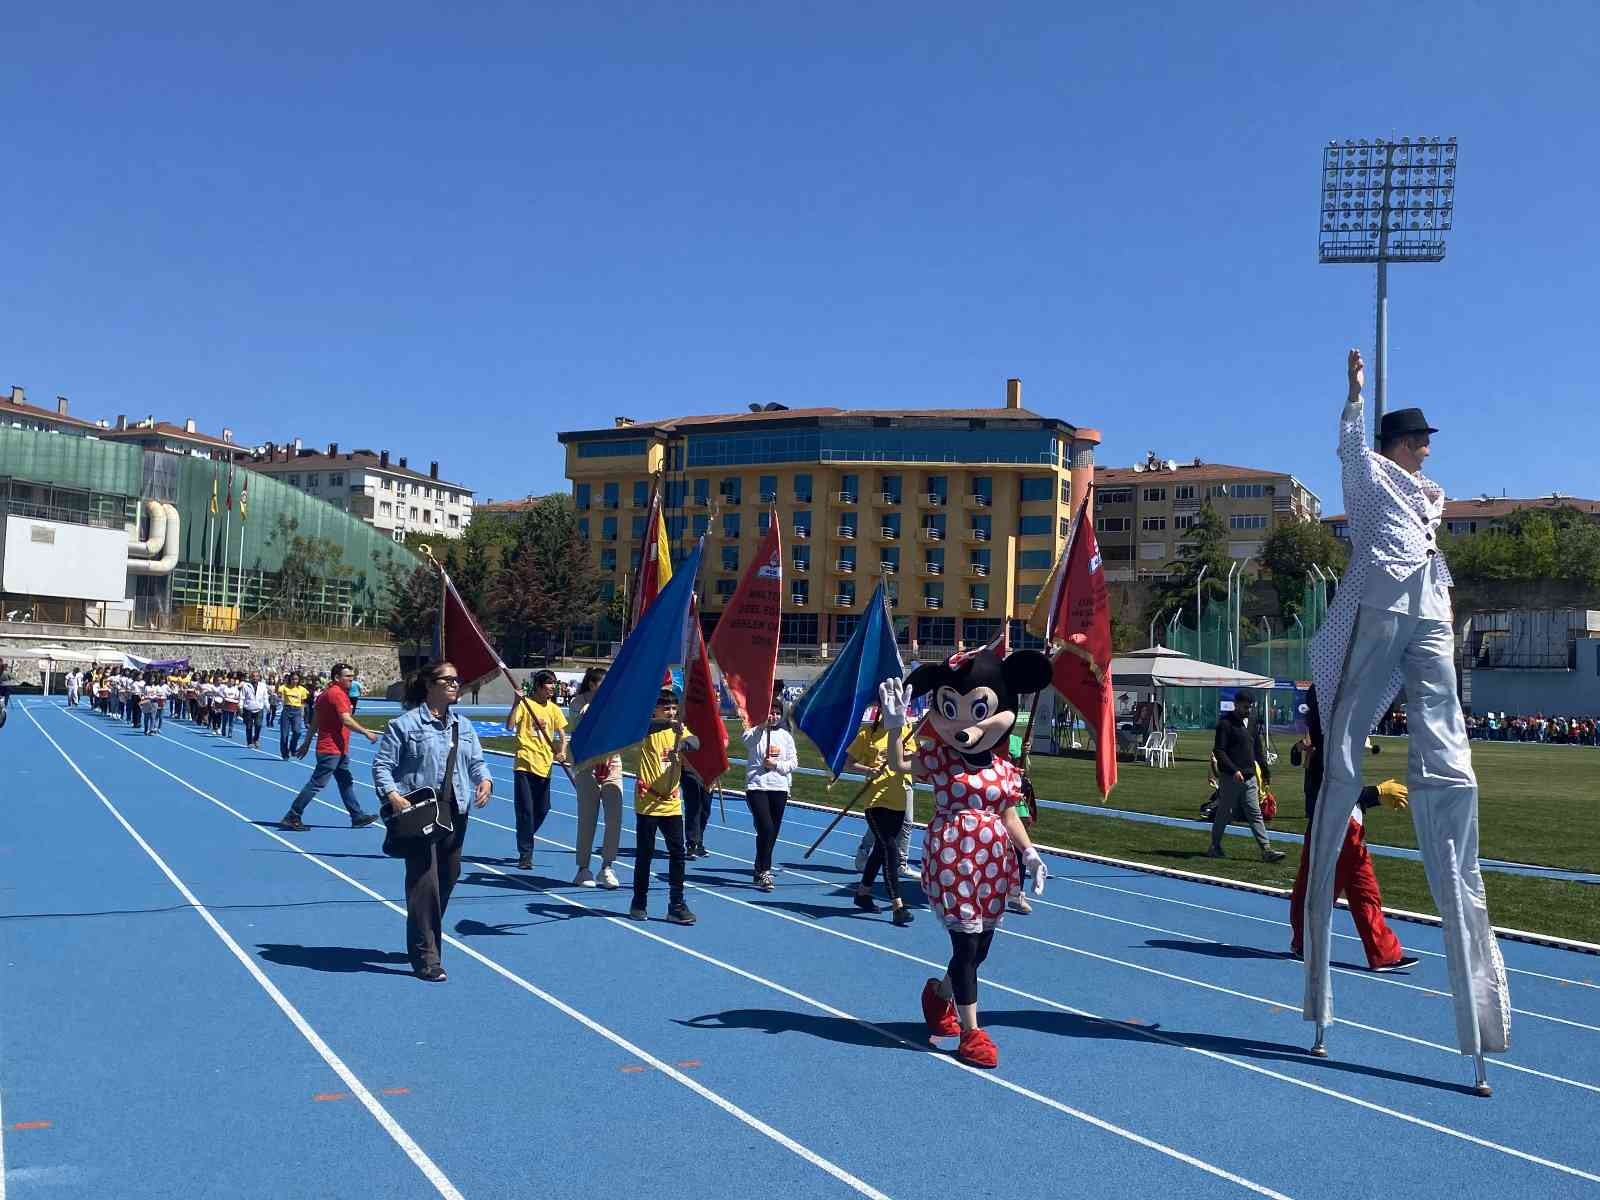 Üsküdar’da düzenlenen 15. Uluslararası Özel Sporcular Atletizm Şenliği, 3 ülkeden, 17 şehirden 115 okul ve 2 bin 100 sporcuyu ağırladı. Şenliğe ...